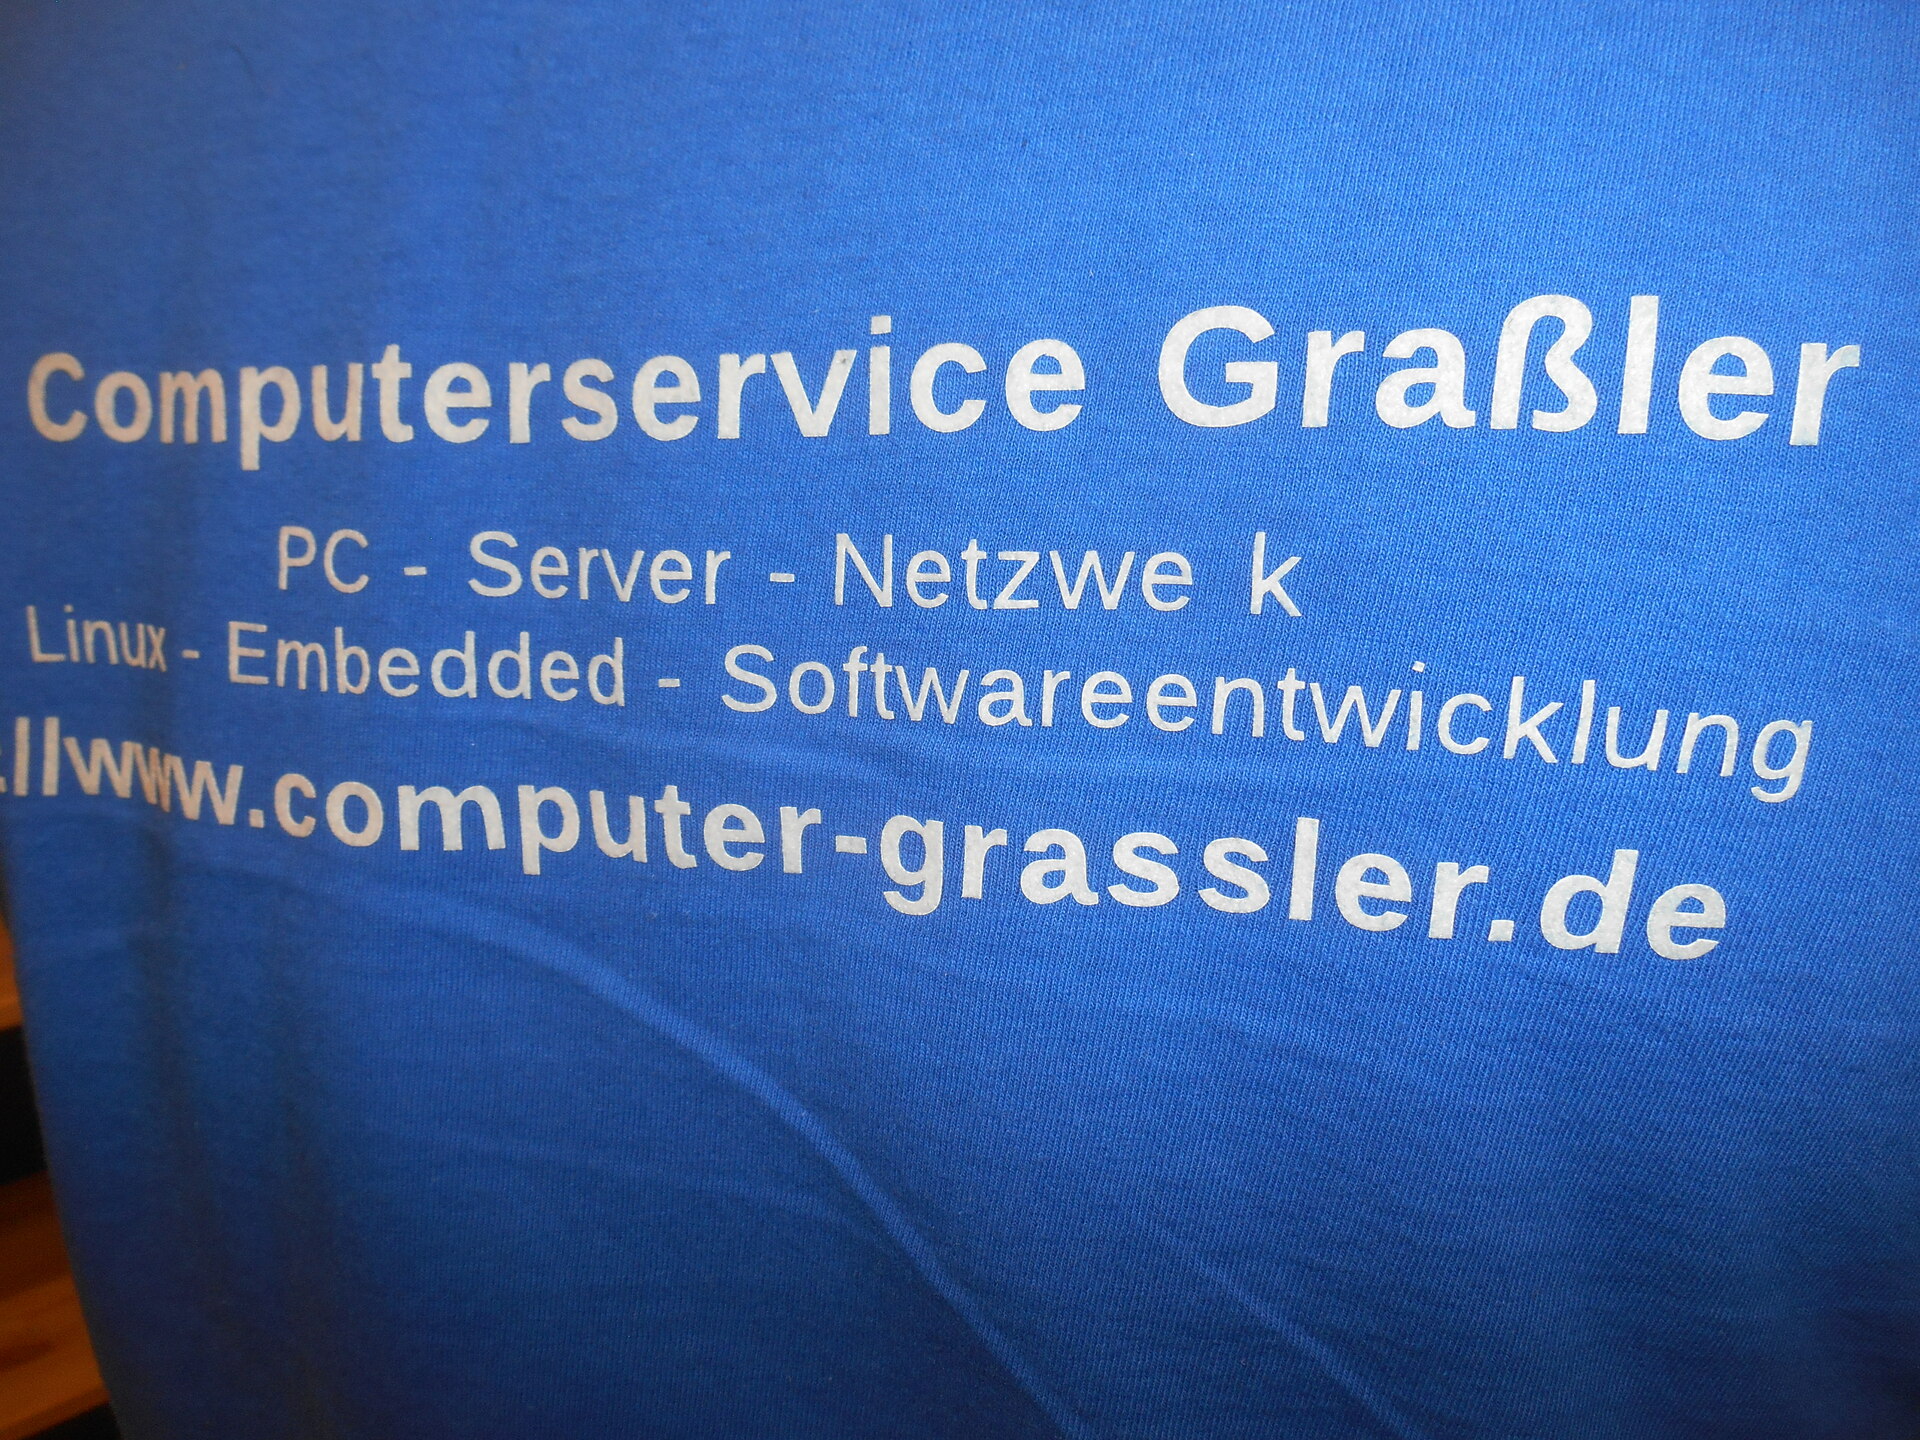 Firmenhemd von Computer Grassler, beim Wort "Netzwerk" fehlt das 'r'.